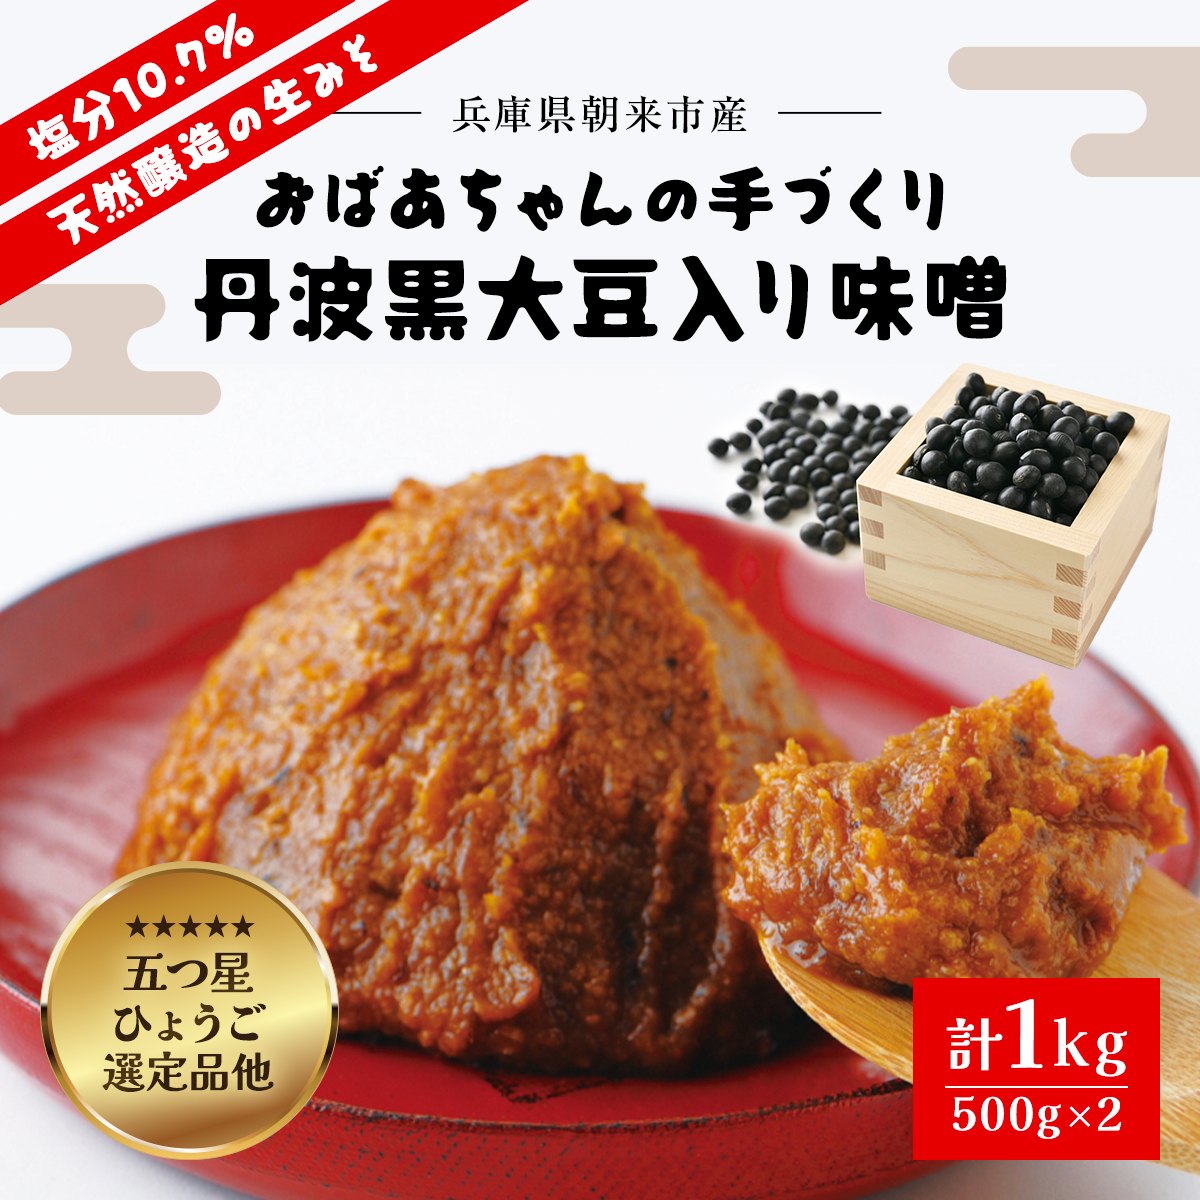 おばあちゃんの手づくり丹波黒大豆入り味噌 (500g×2) 兵庫県 朝来市 AS35A2